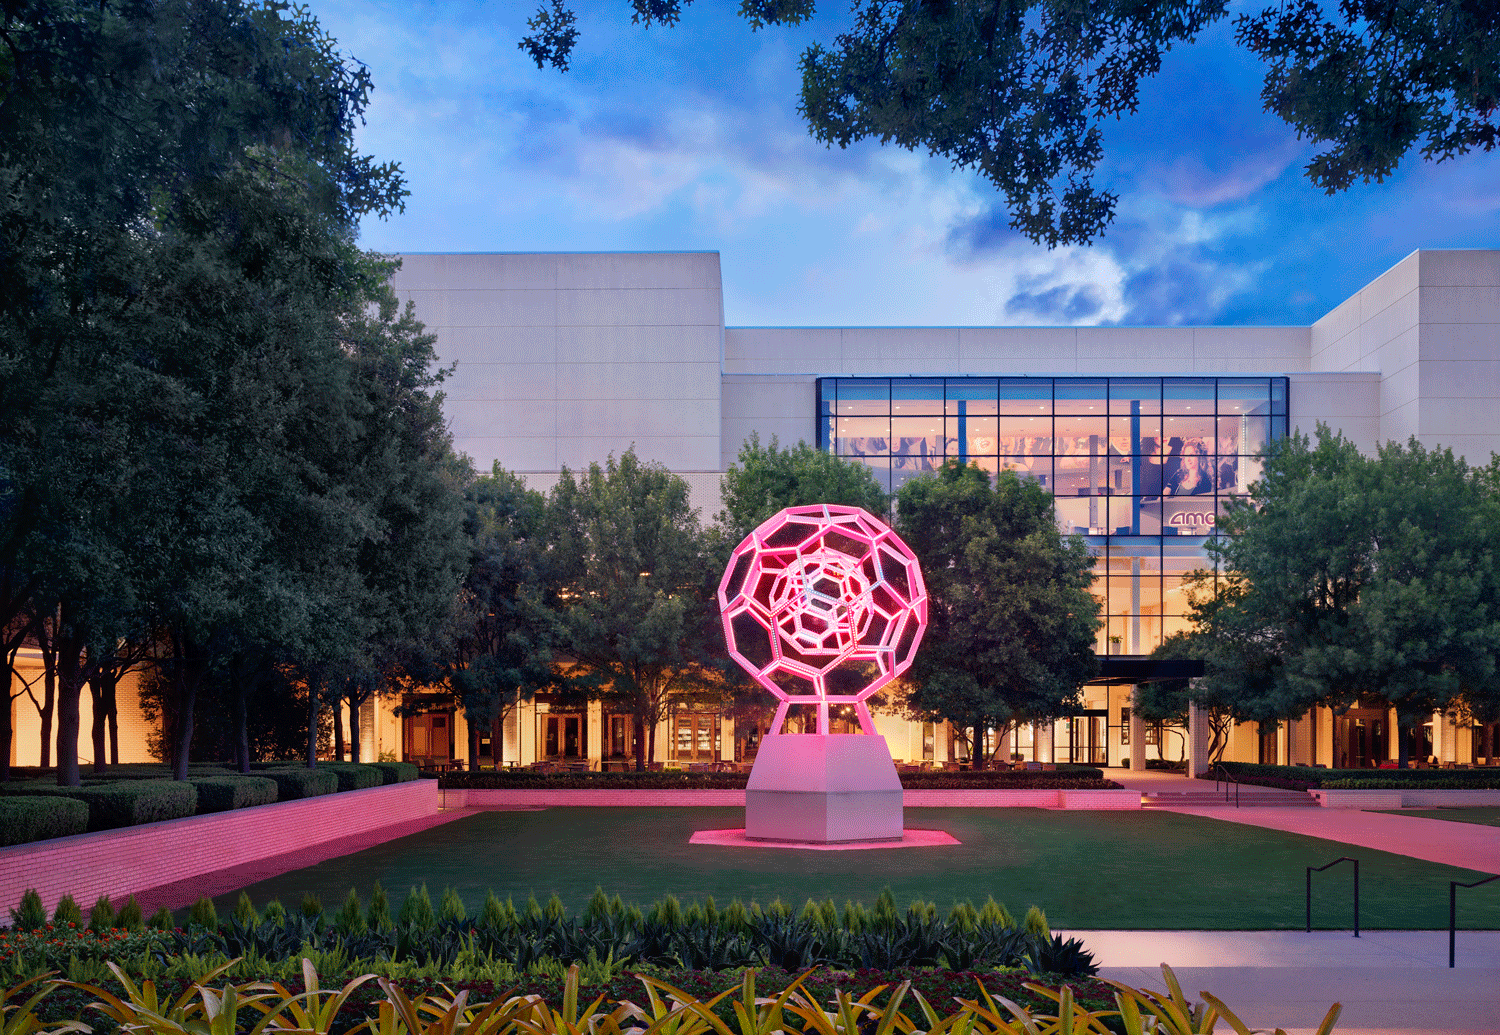 NorthPark Center in Dallas Has New Santa – NBC 5 Dallas-Fort Worth